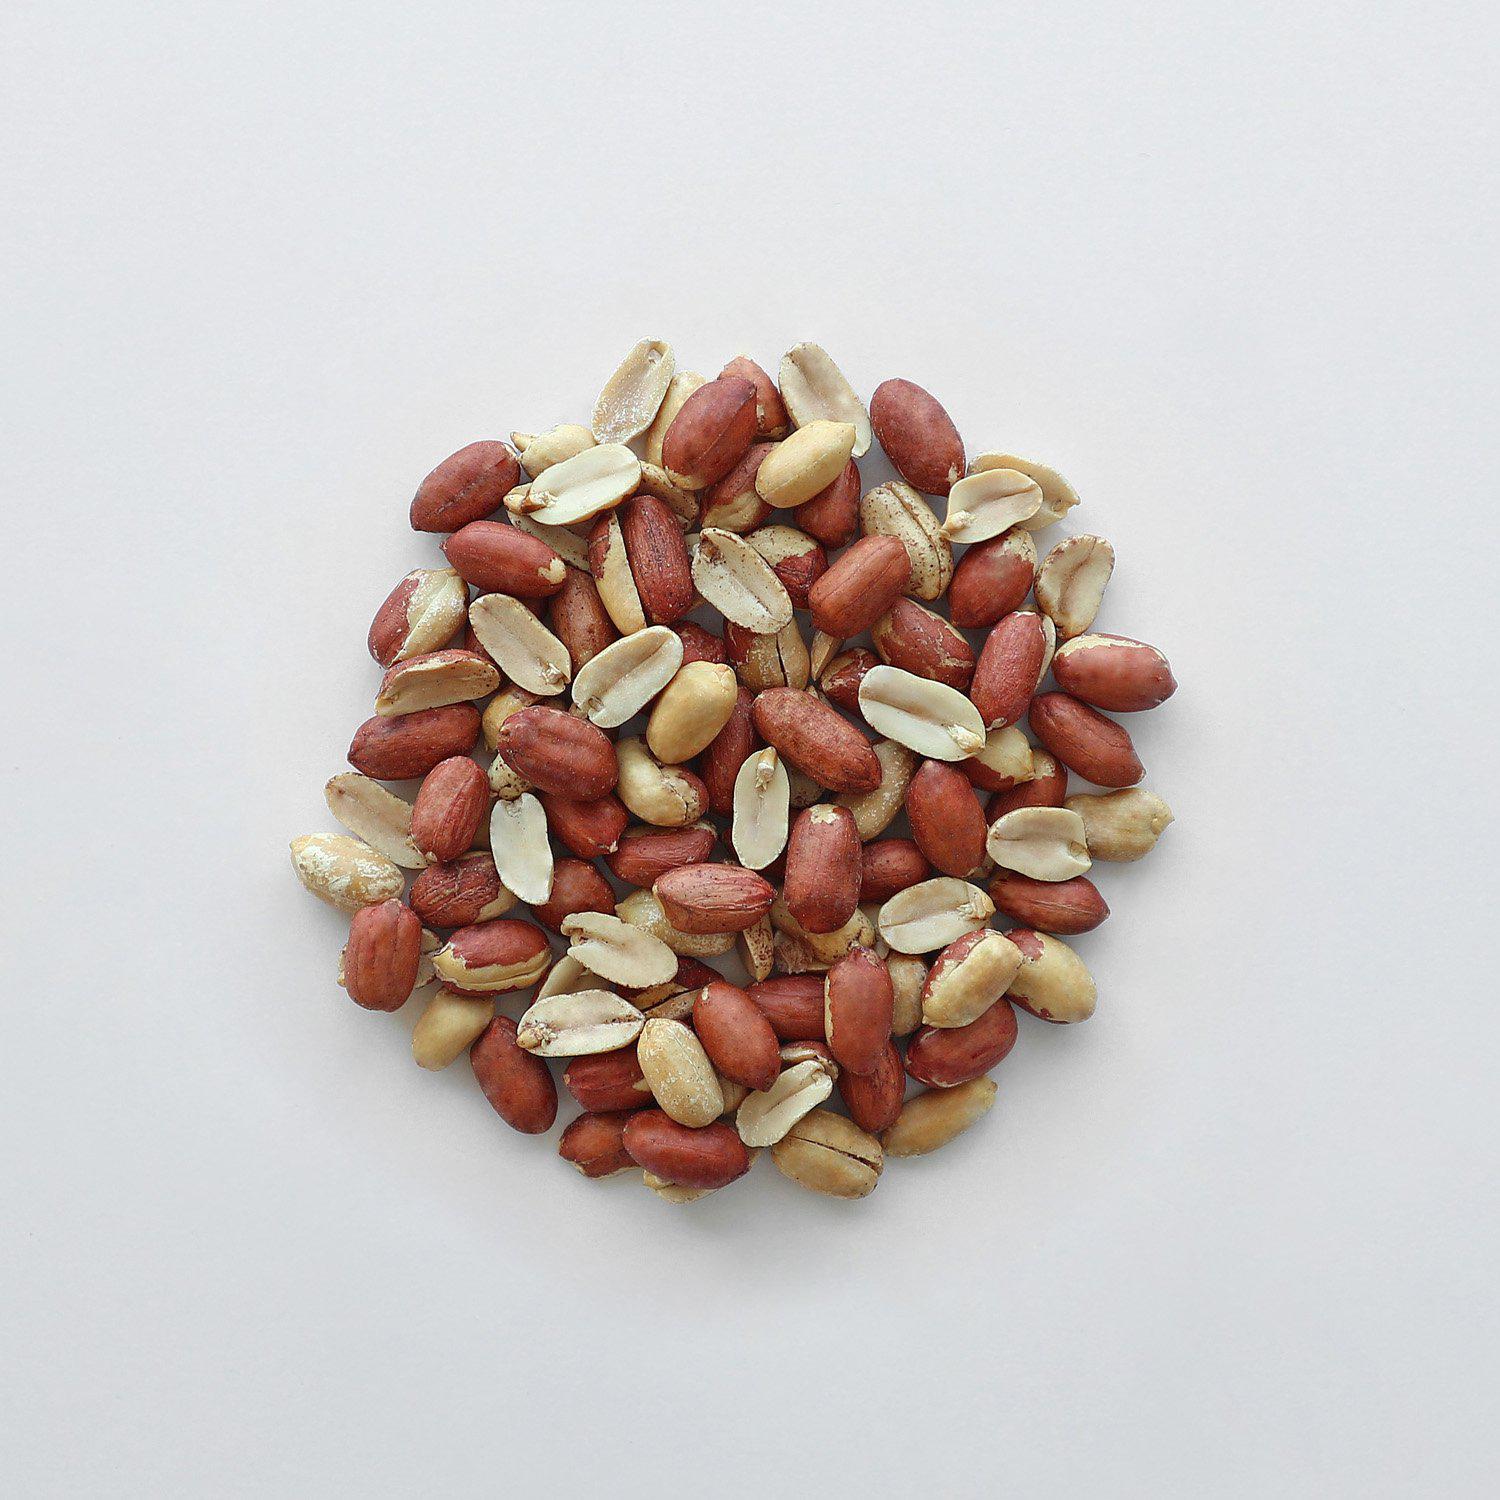 UNSALTED REDSKIN PEANUTS-Roasted Nuts-The Roasted Nut Inc.